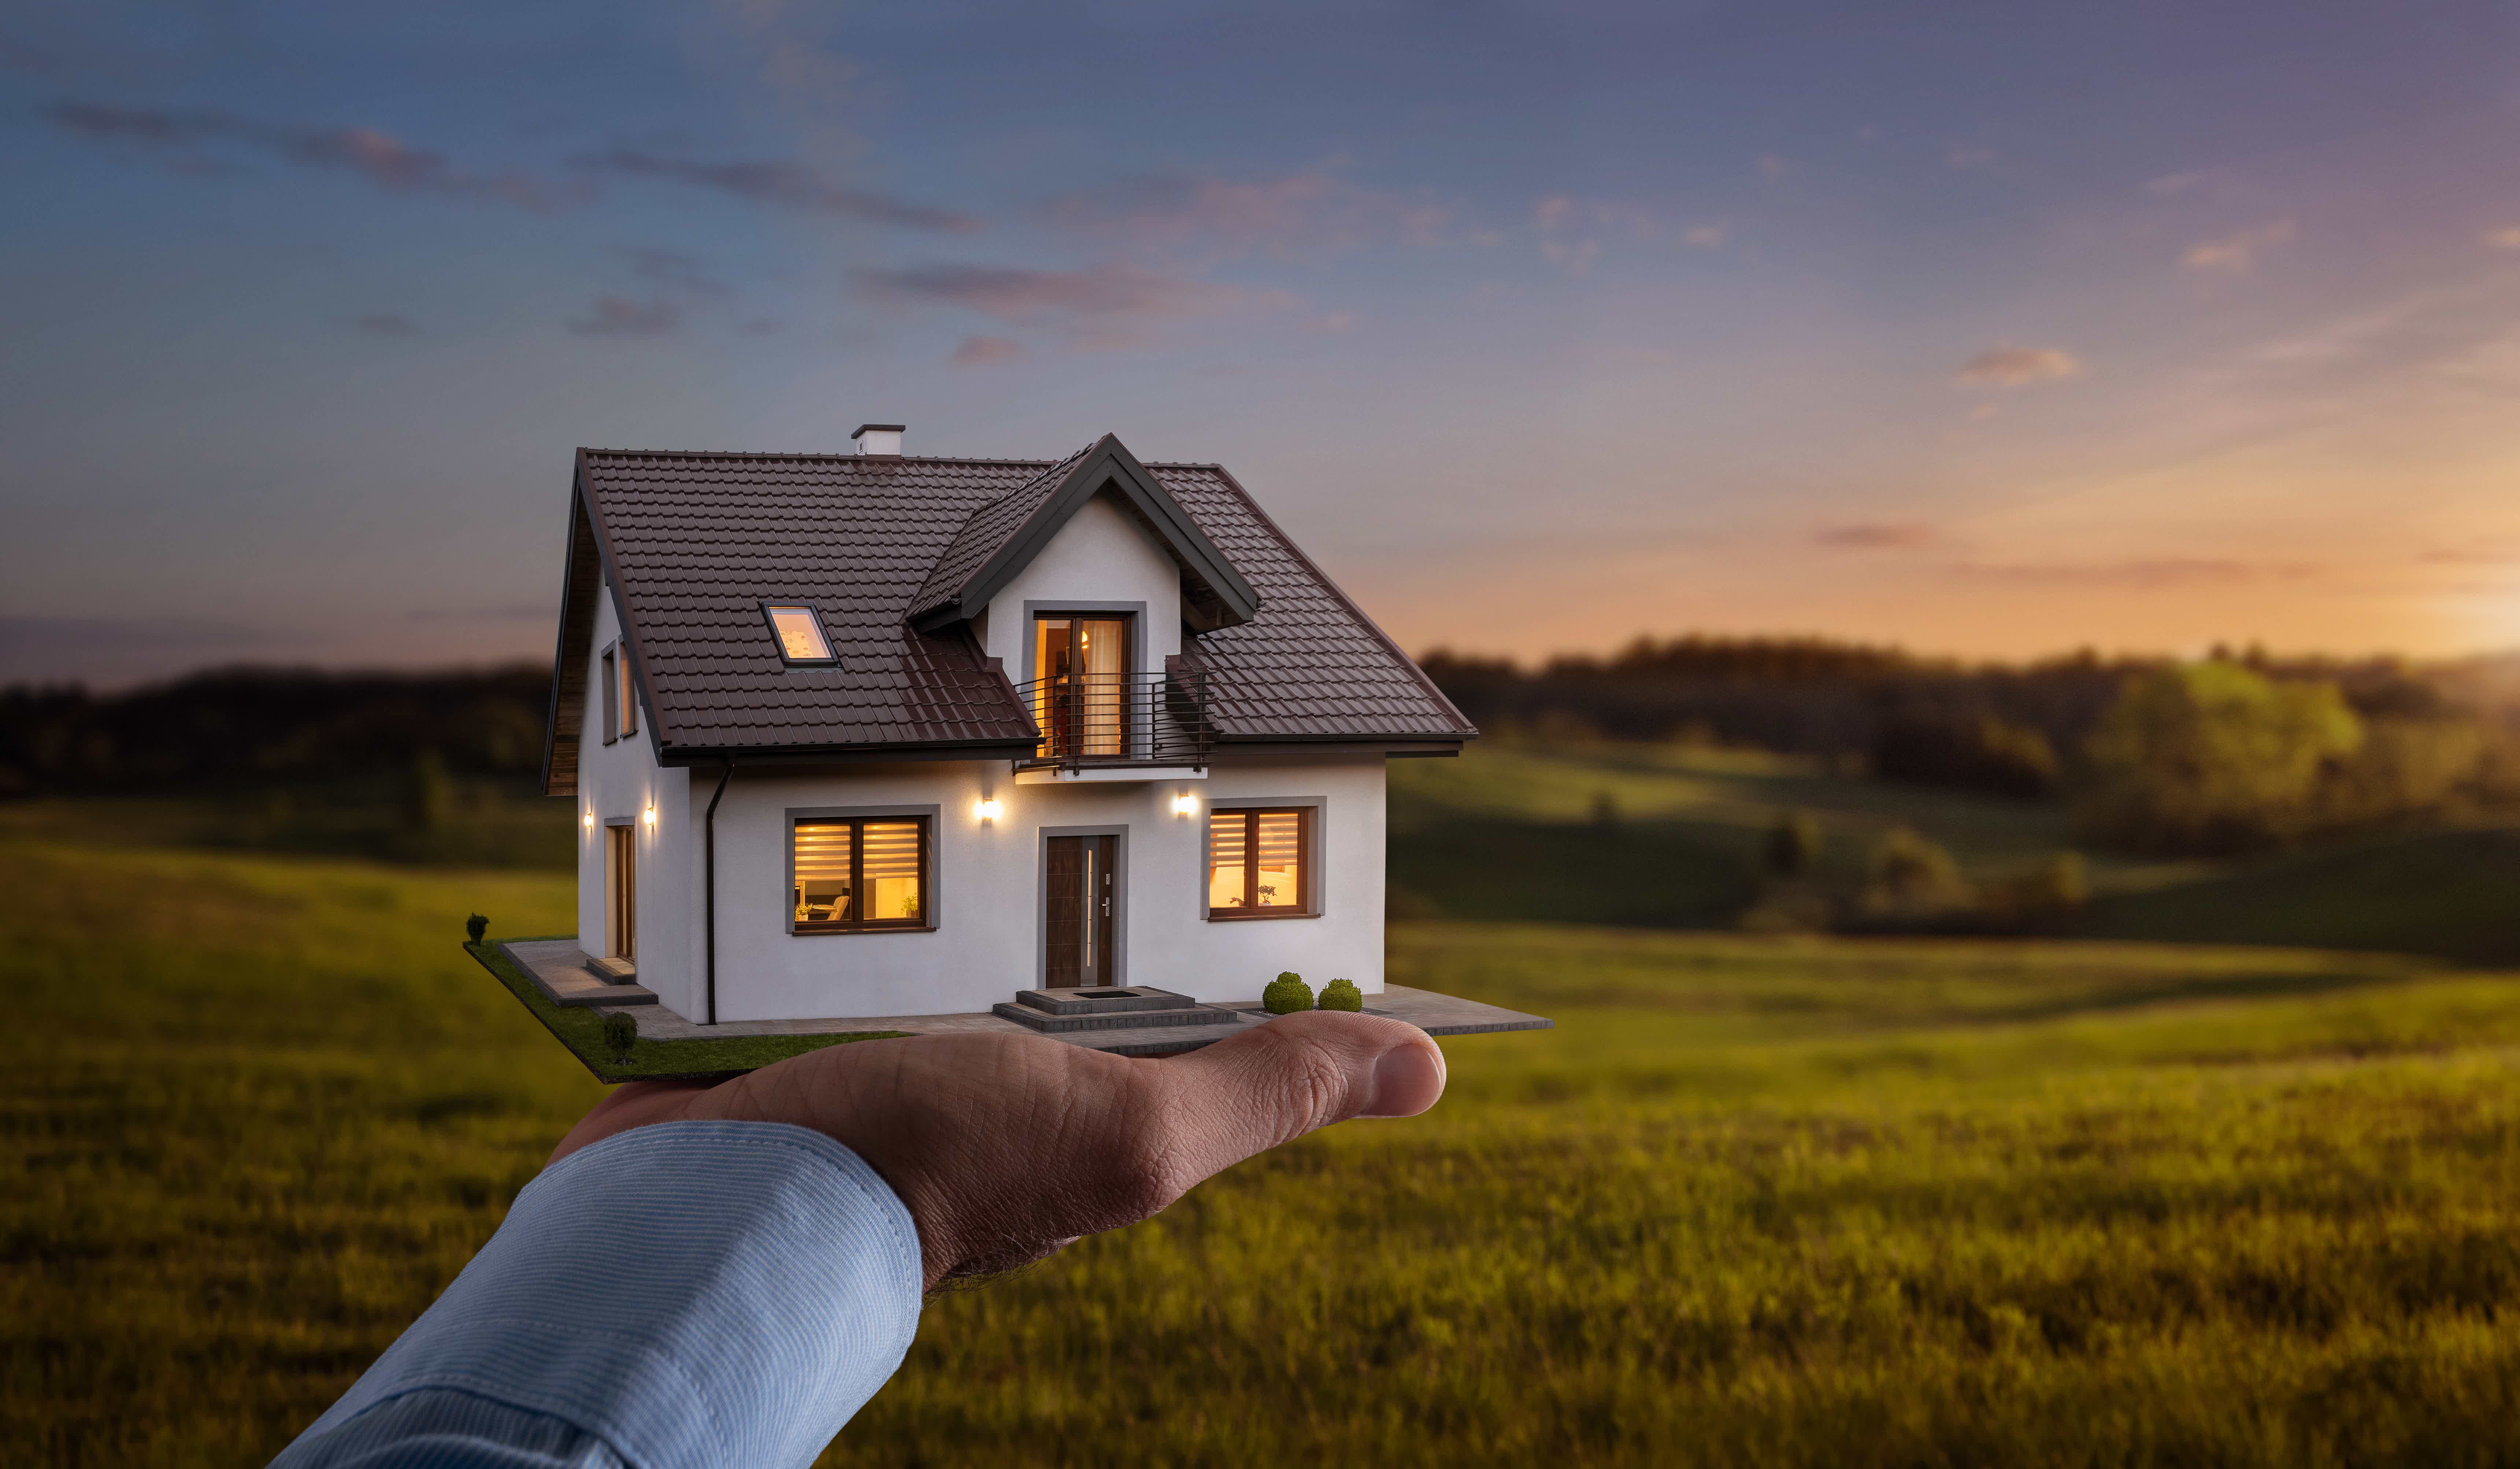 Comprar imóvel com crédito imobiliário pode ser um bom caminho. Fonte: Adobe Stock